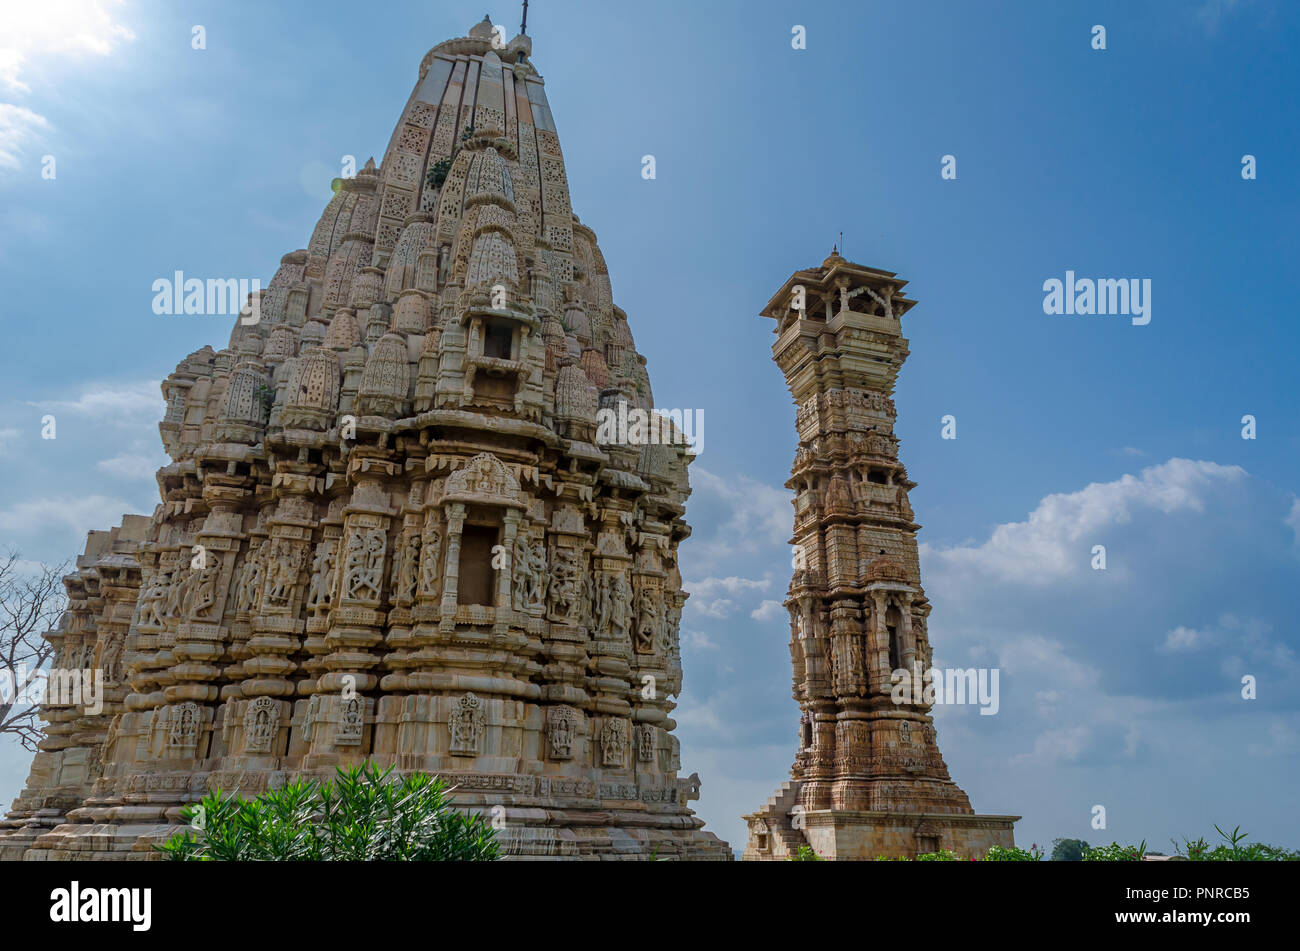 Kirti Stambh at Chittorgarh fort, Rajasthan, India Stock Photo